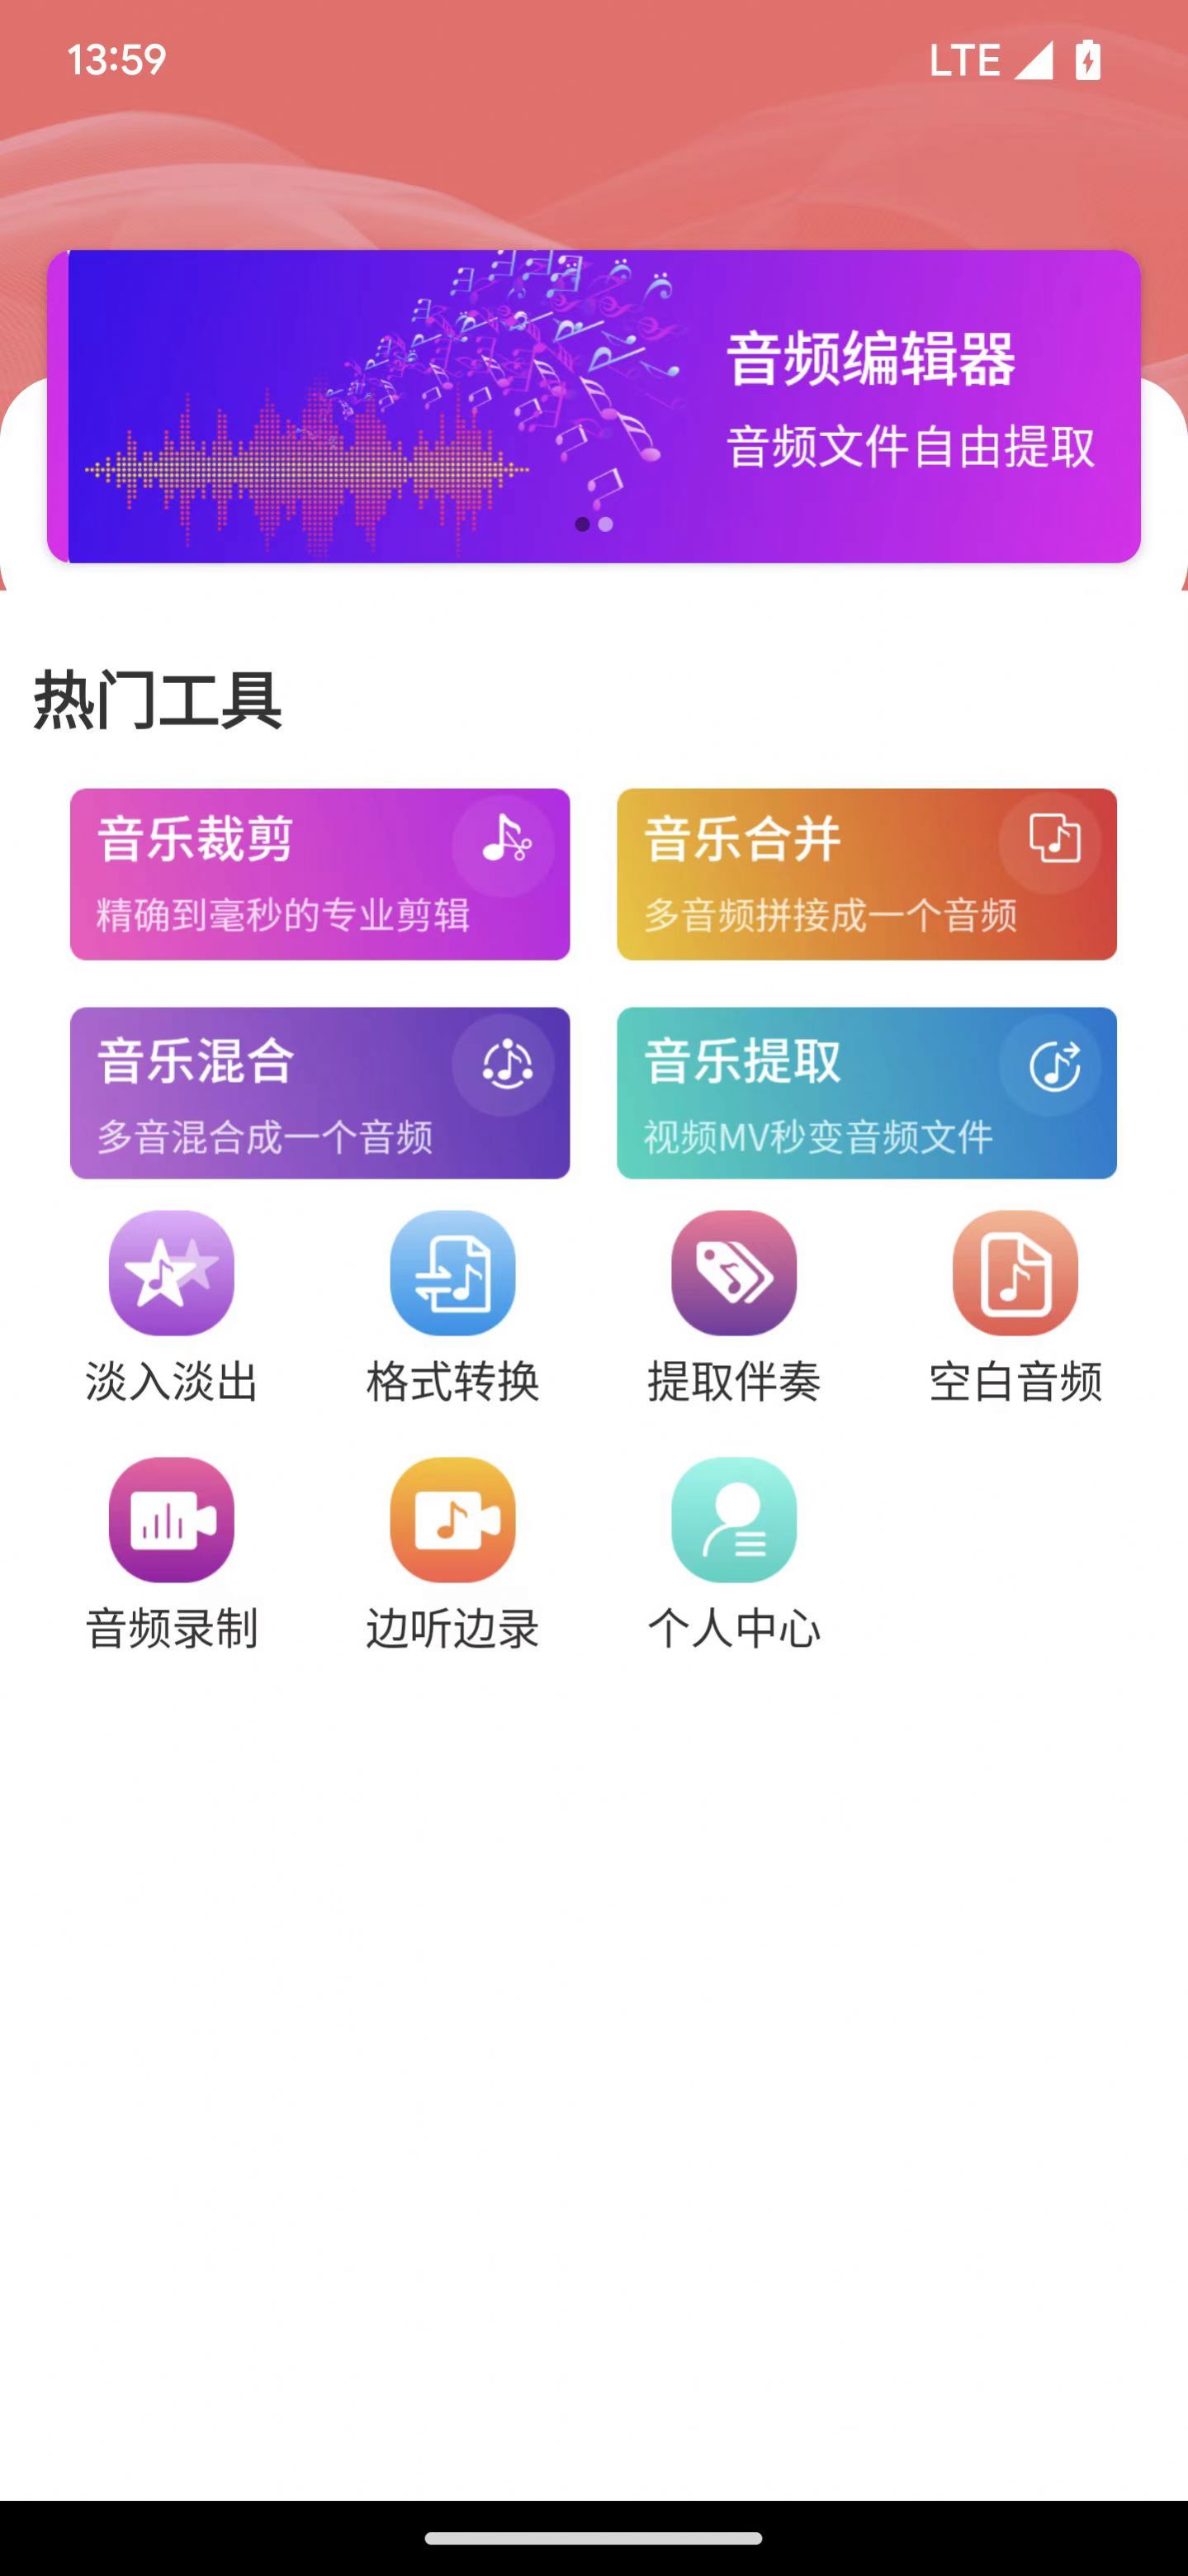 乾荣音频编辑软件app